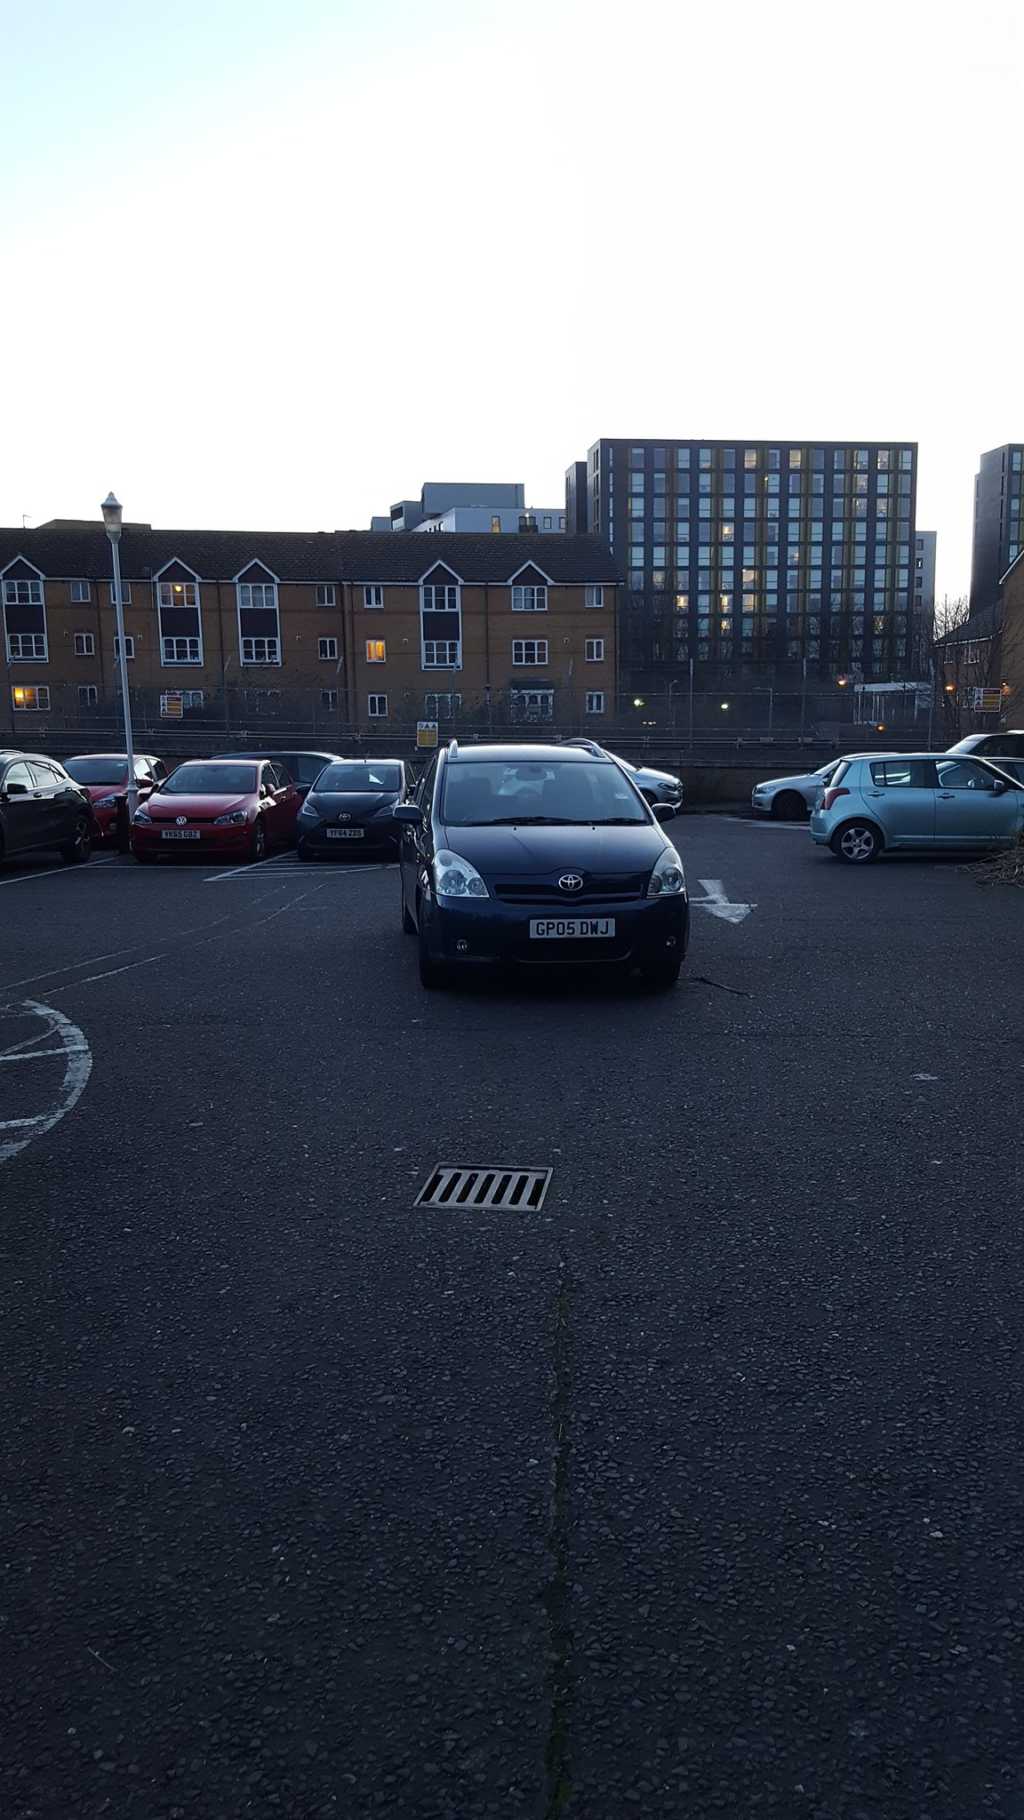 GP05 DWJ displaying Selfish Parking